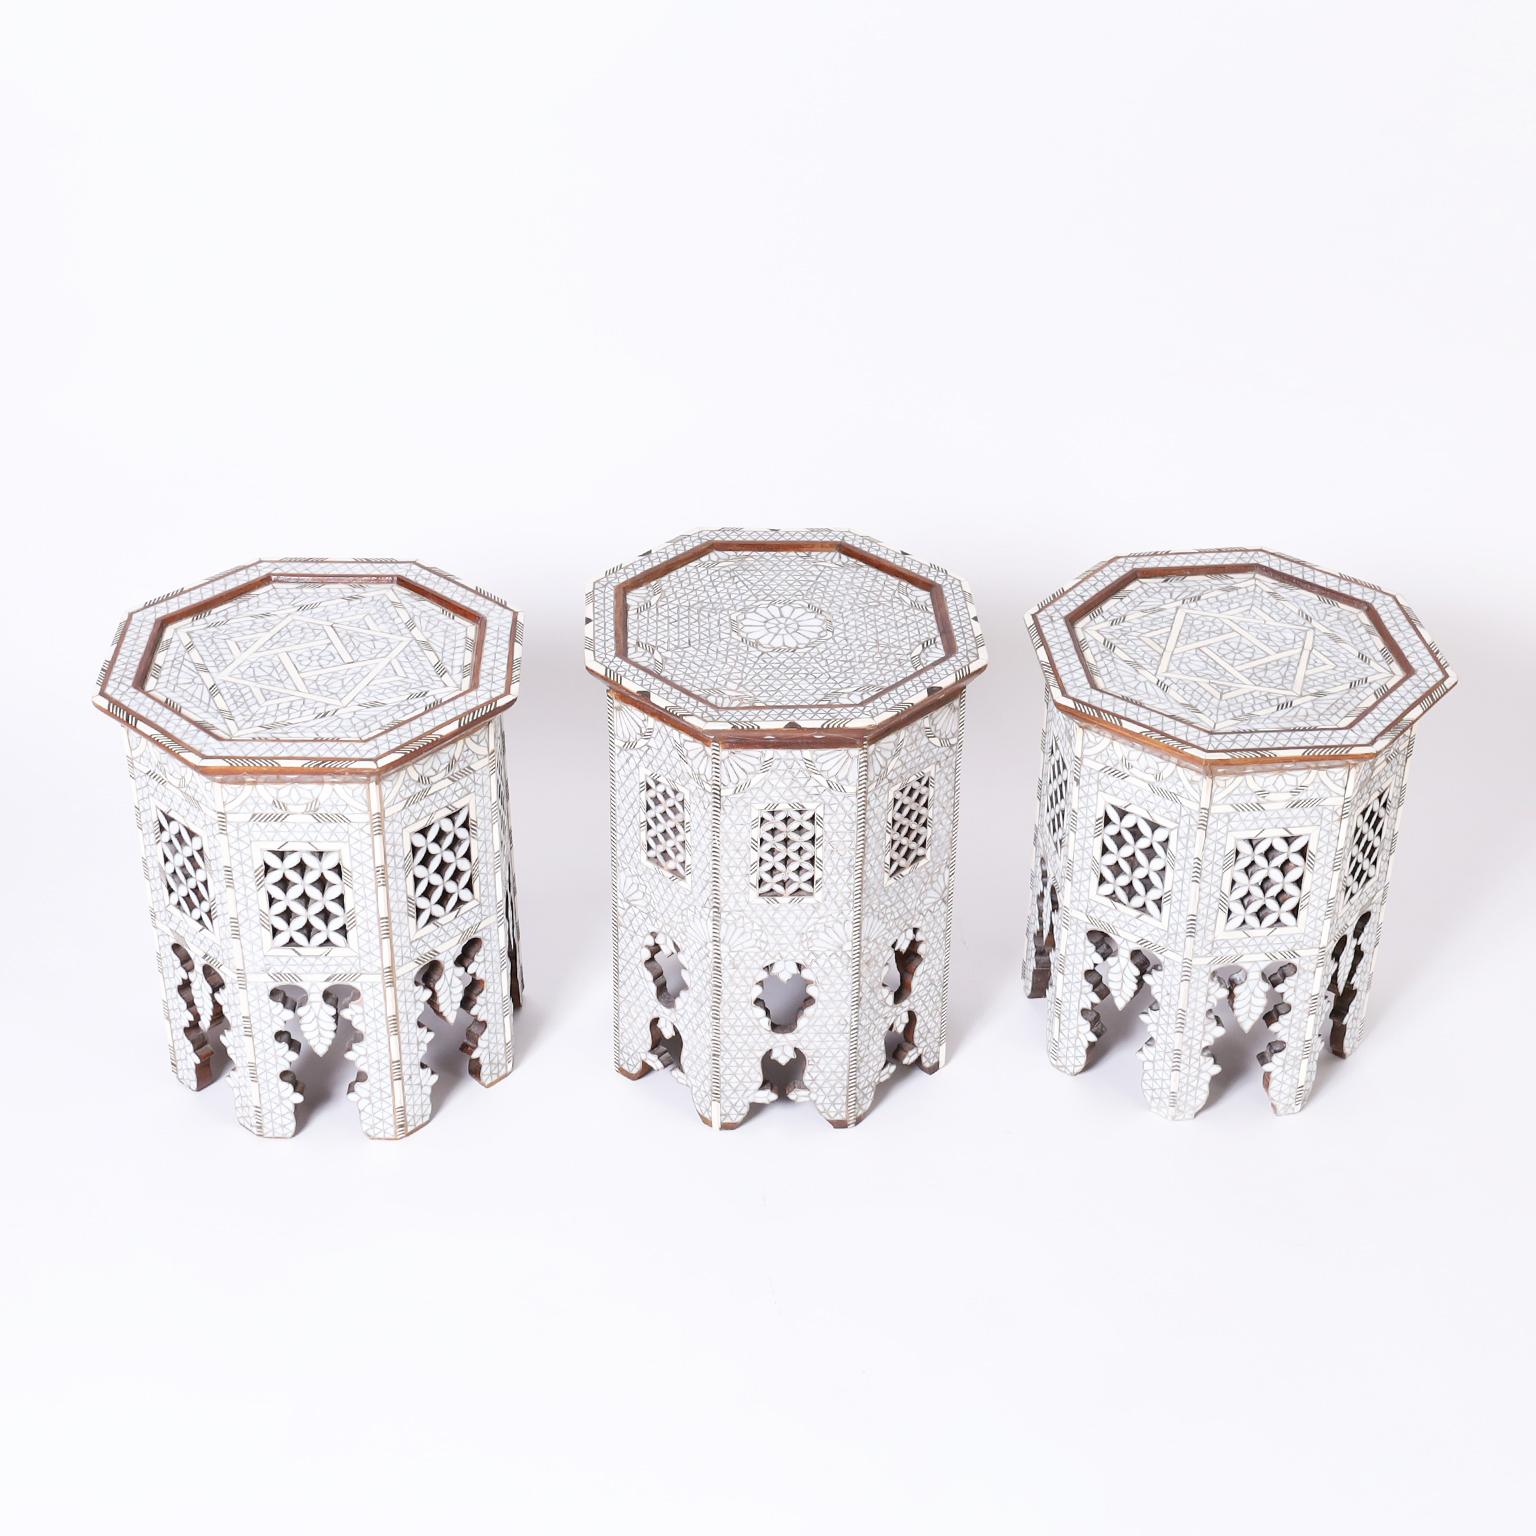 Auffälliger Satz von drei marokkanischen Ständern mit achteckigen Formen, die aus Nussbaumholz gefertigt sind und aufwändige geometrische und florale Mosaike aus Perlmutt aufweisen, die mit Knochen und Ebenholz akzentuiert sind, alles auf